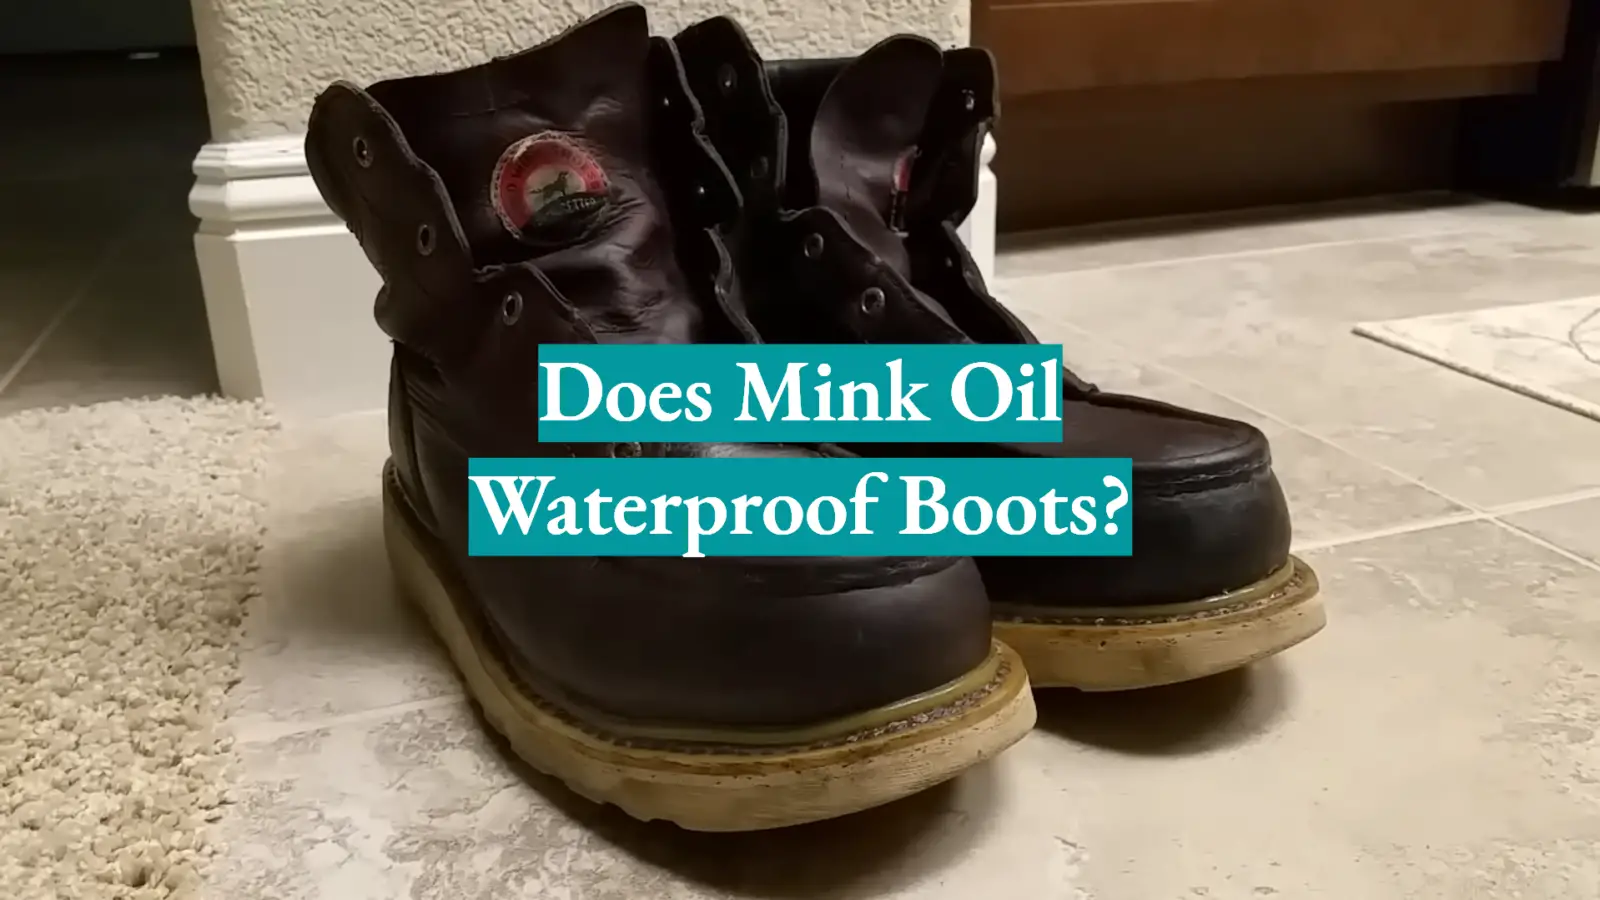 Does Mink Oil Waterproof Boots?